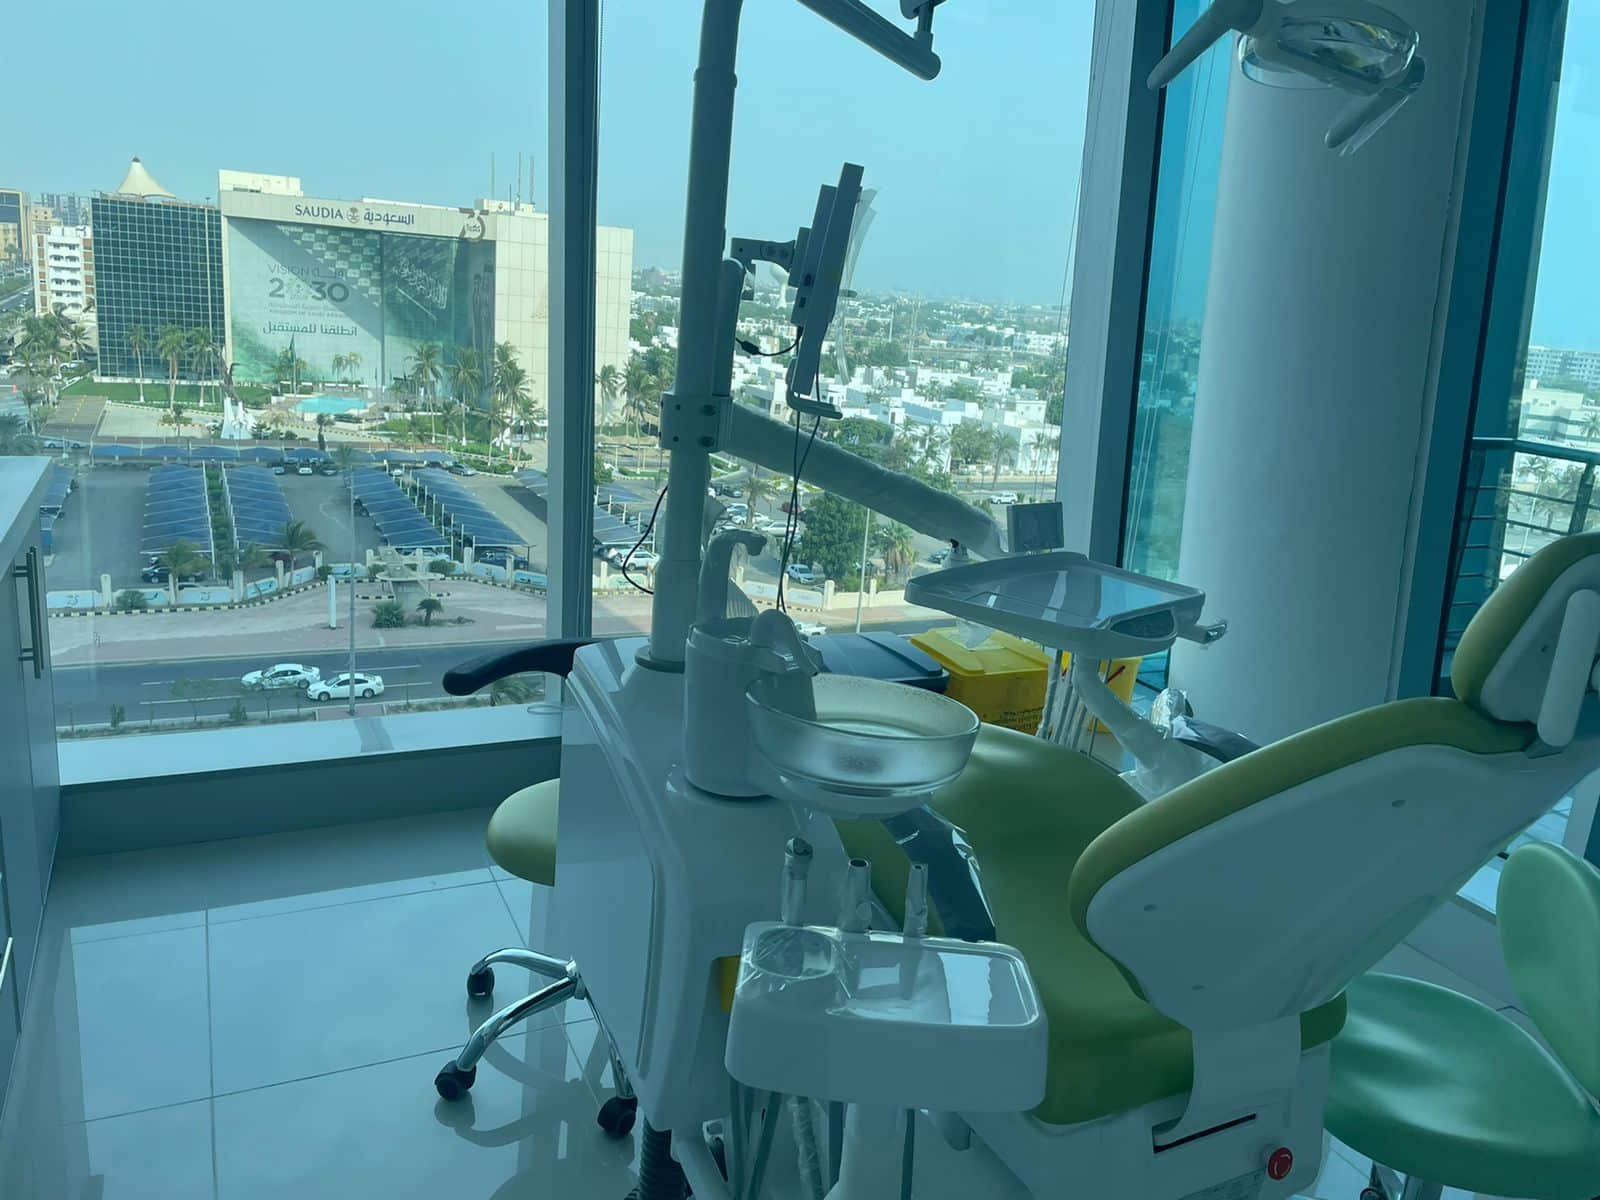 عيادات اسنان شمال الرياض